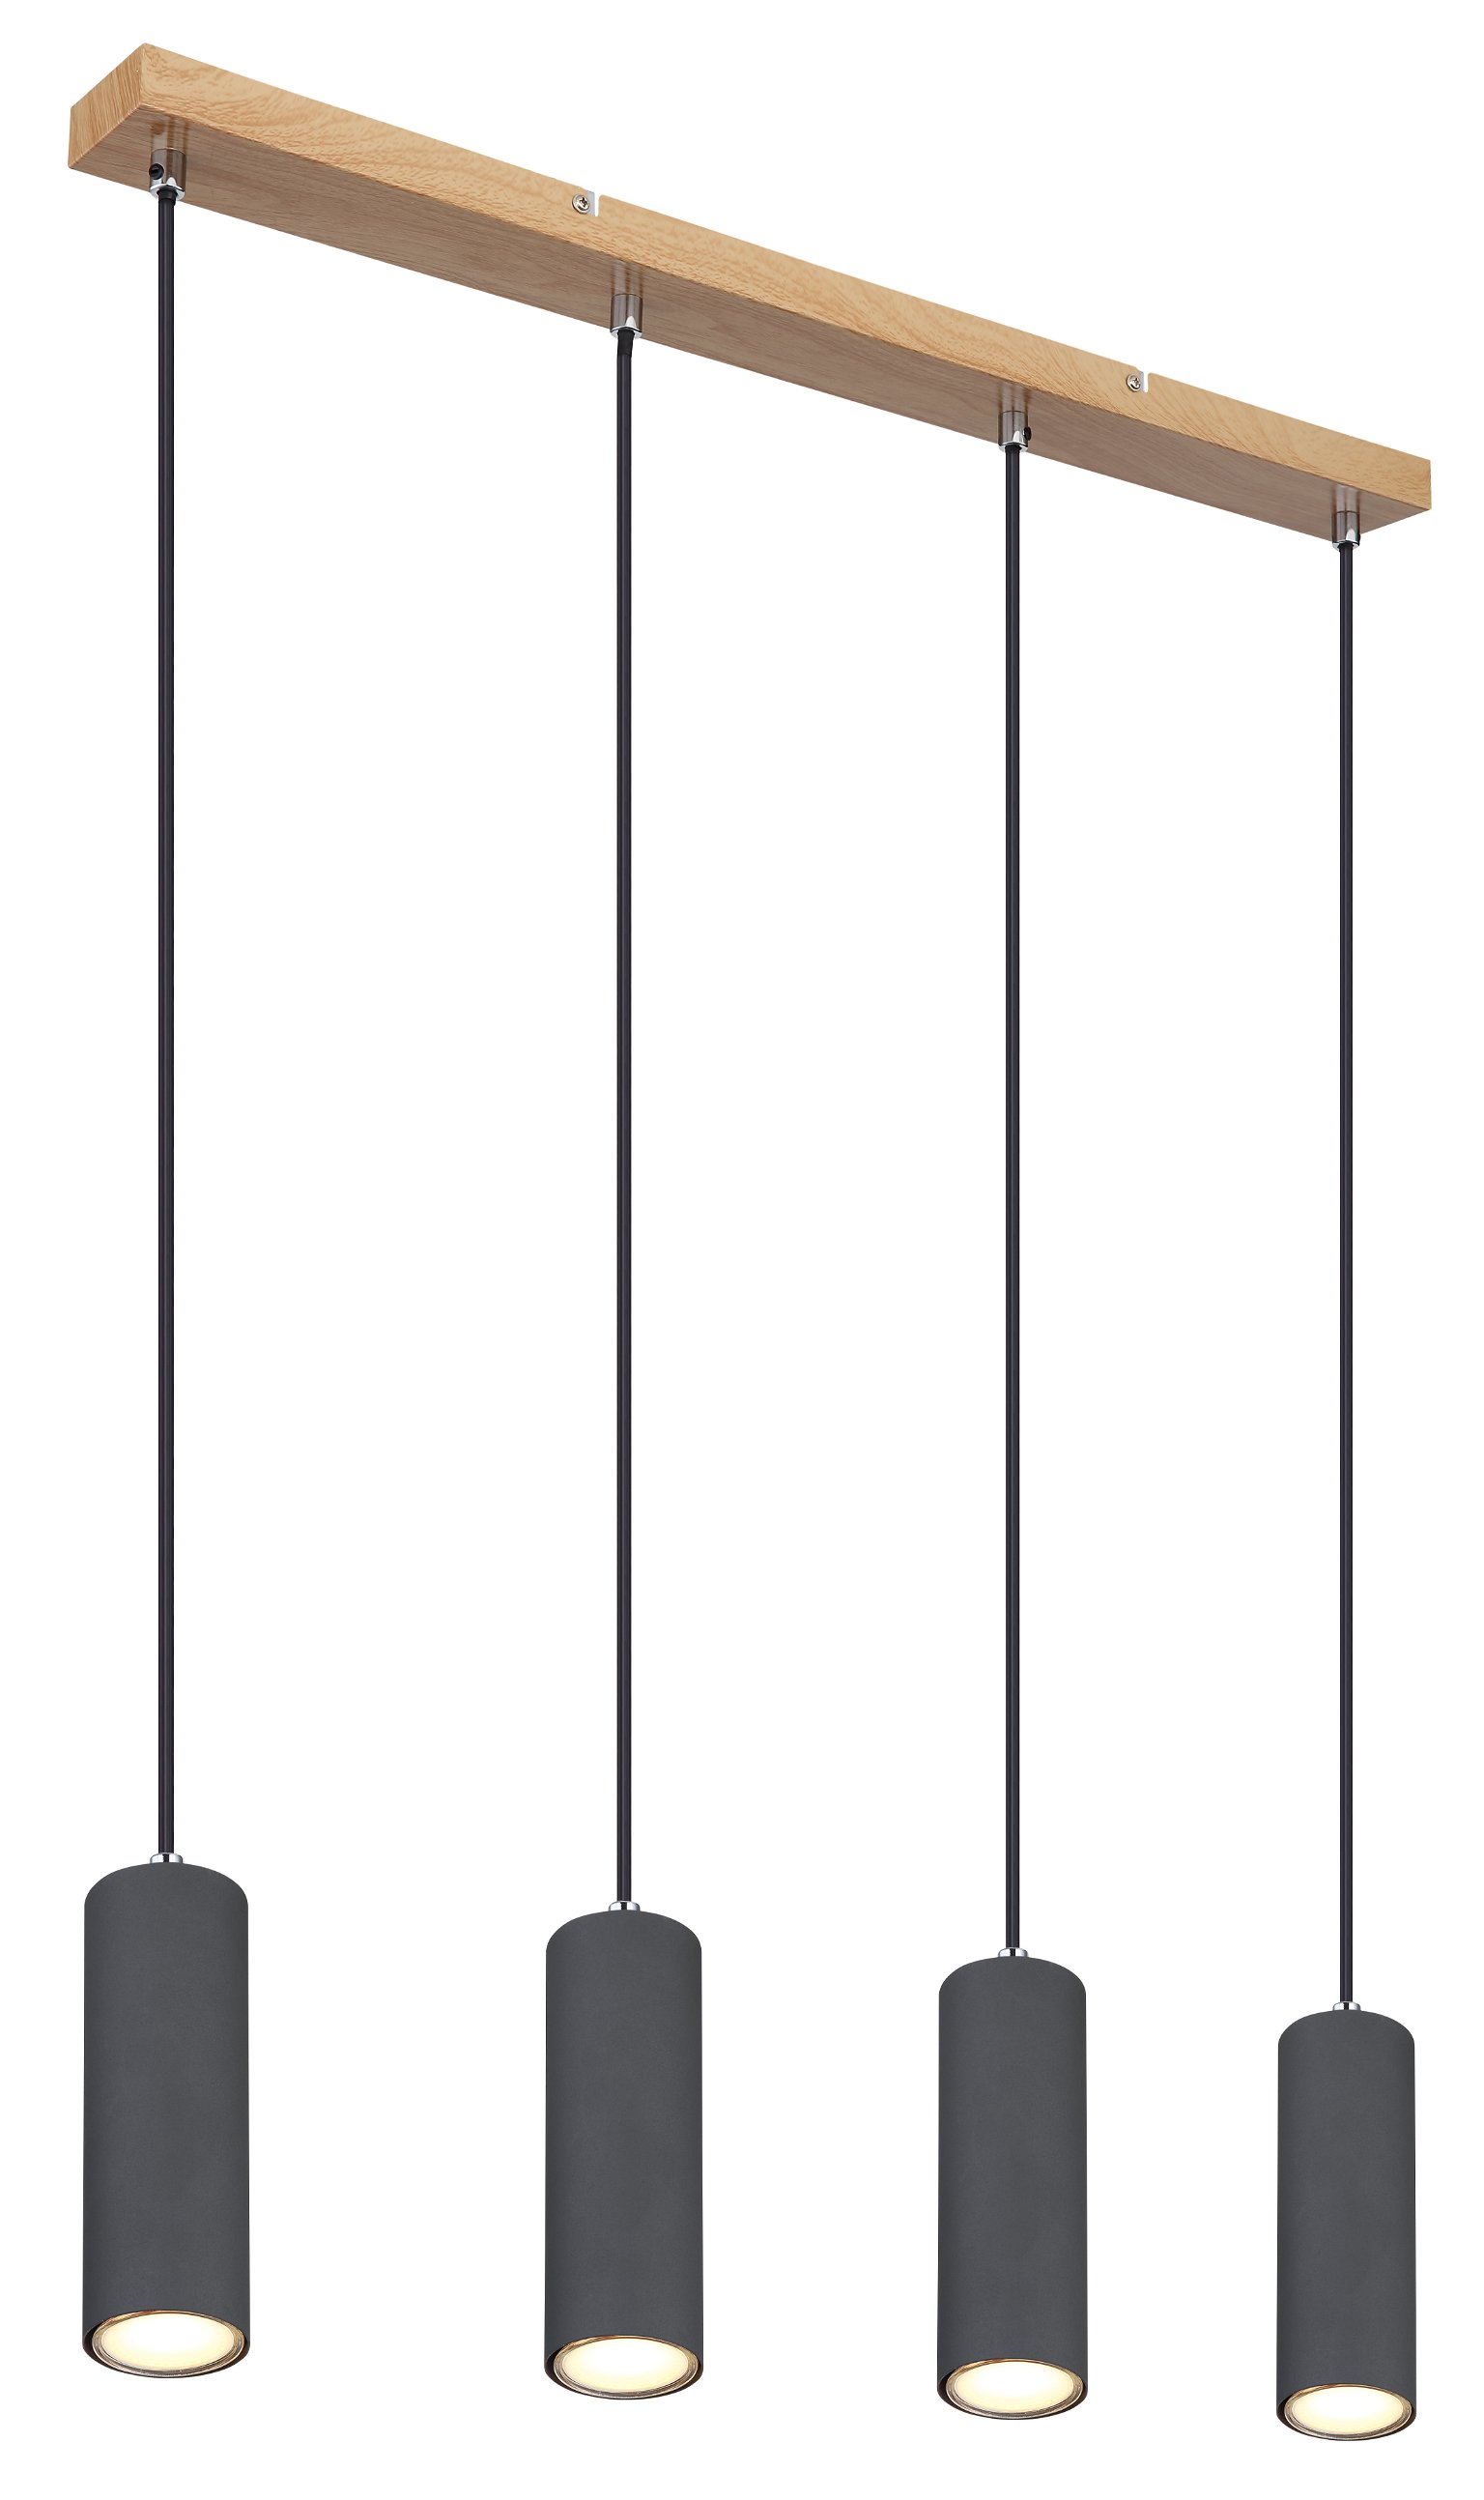 Pakabinamas šviestuvas GLOBO Robby, 4 x GU10, 35W, medžio/ matinės juodos sp., 6x65x120 cm - 1